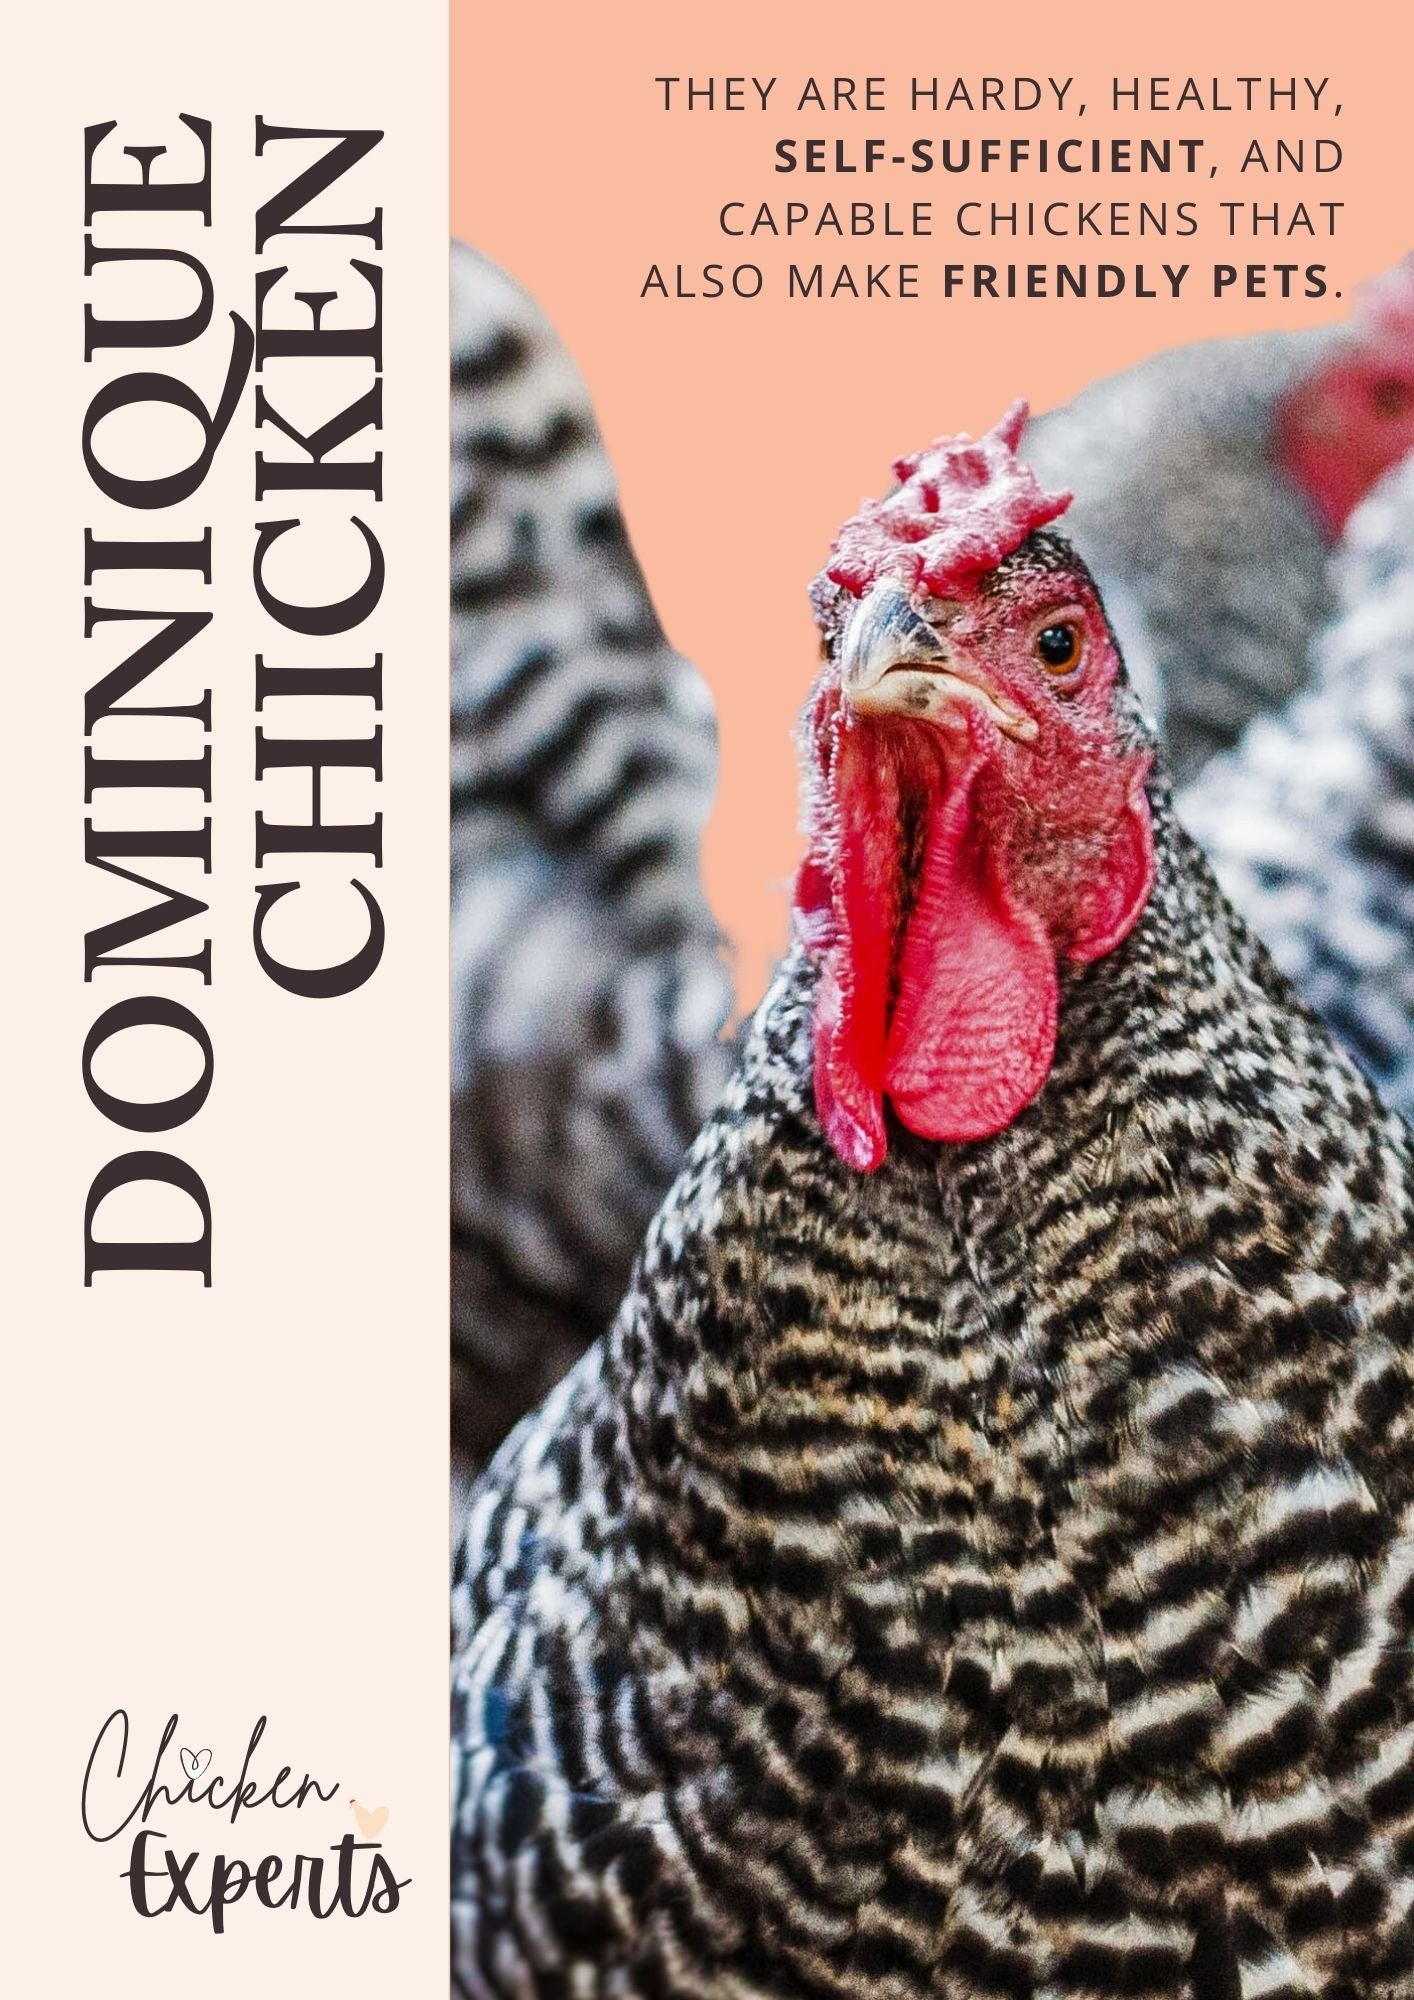 dominique chicken